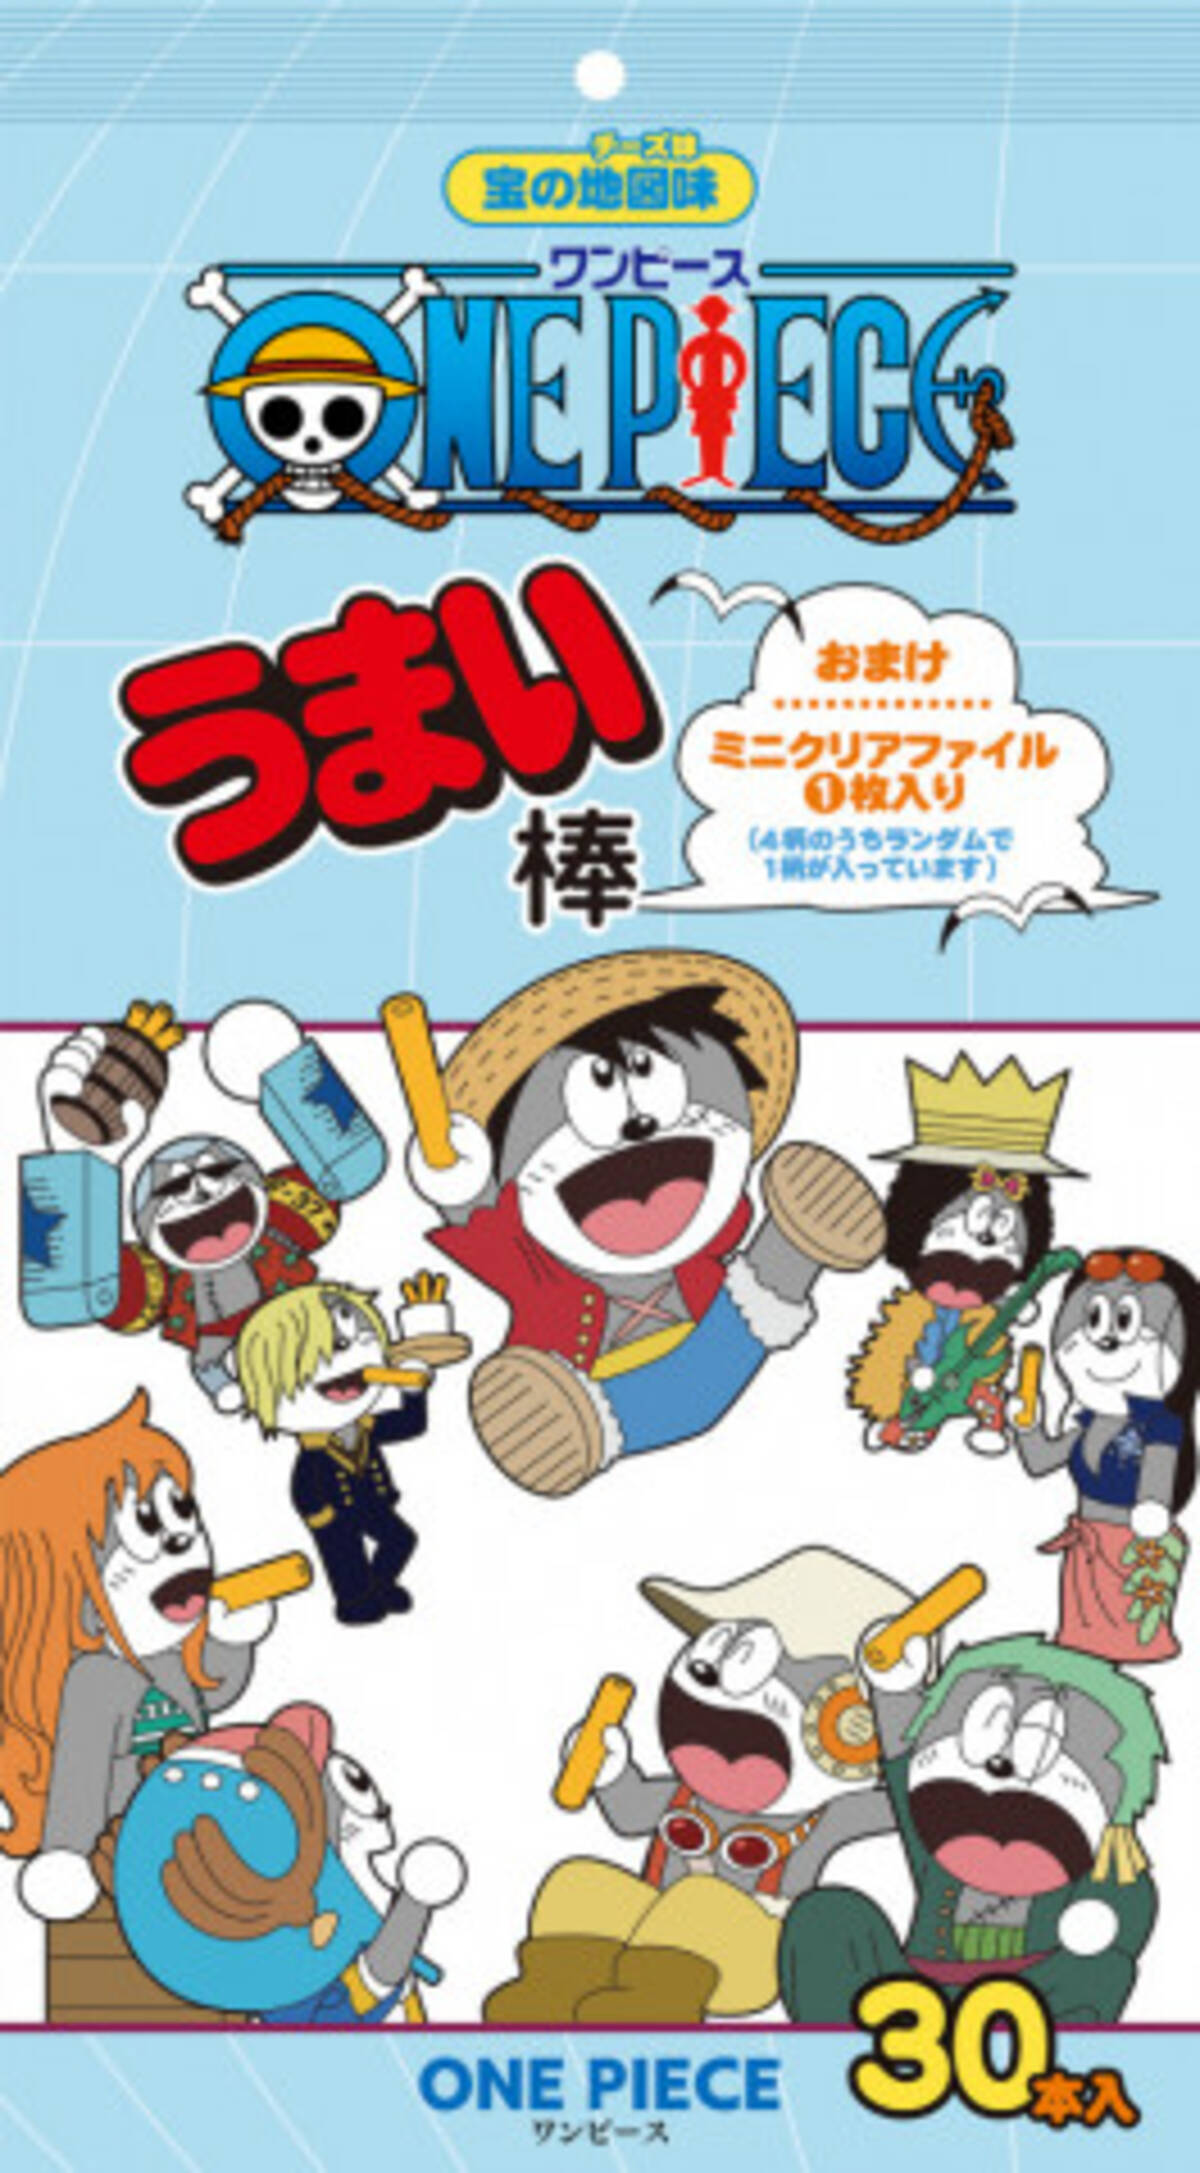 One Piece 世界に うまい棒 がやってきた 麦わらの一味が うまえもん 化 年5月29日 エキサイトニュース